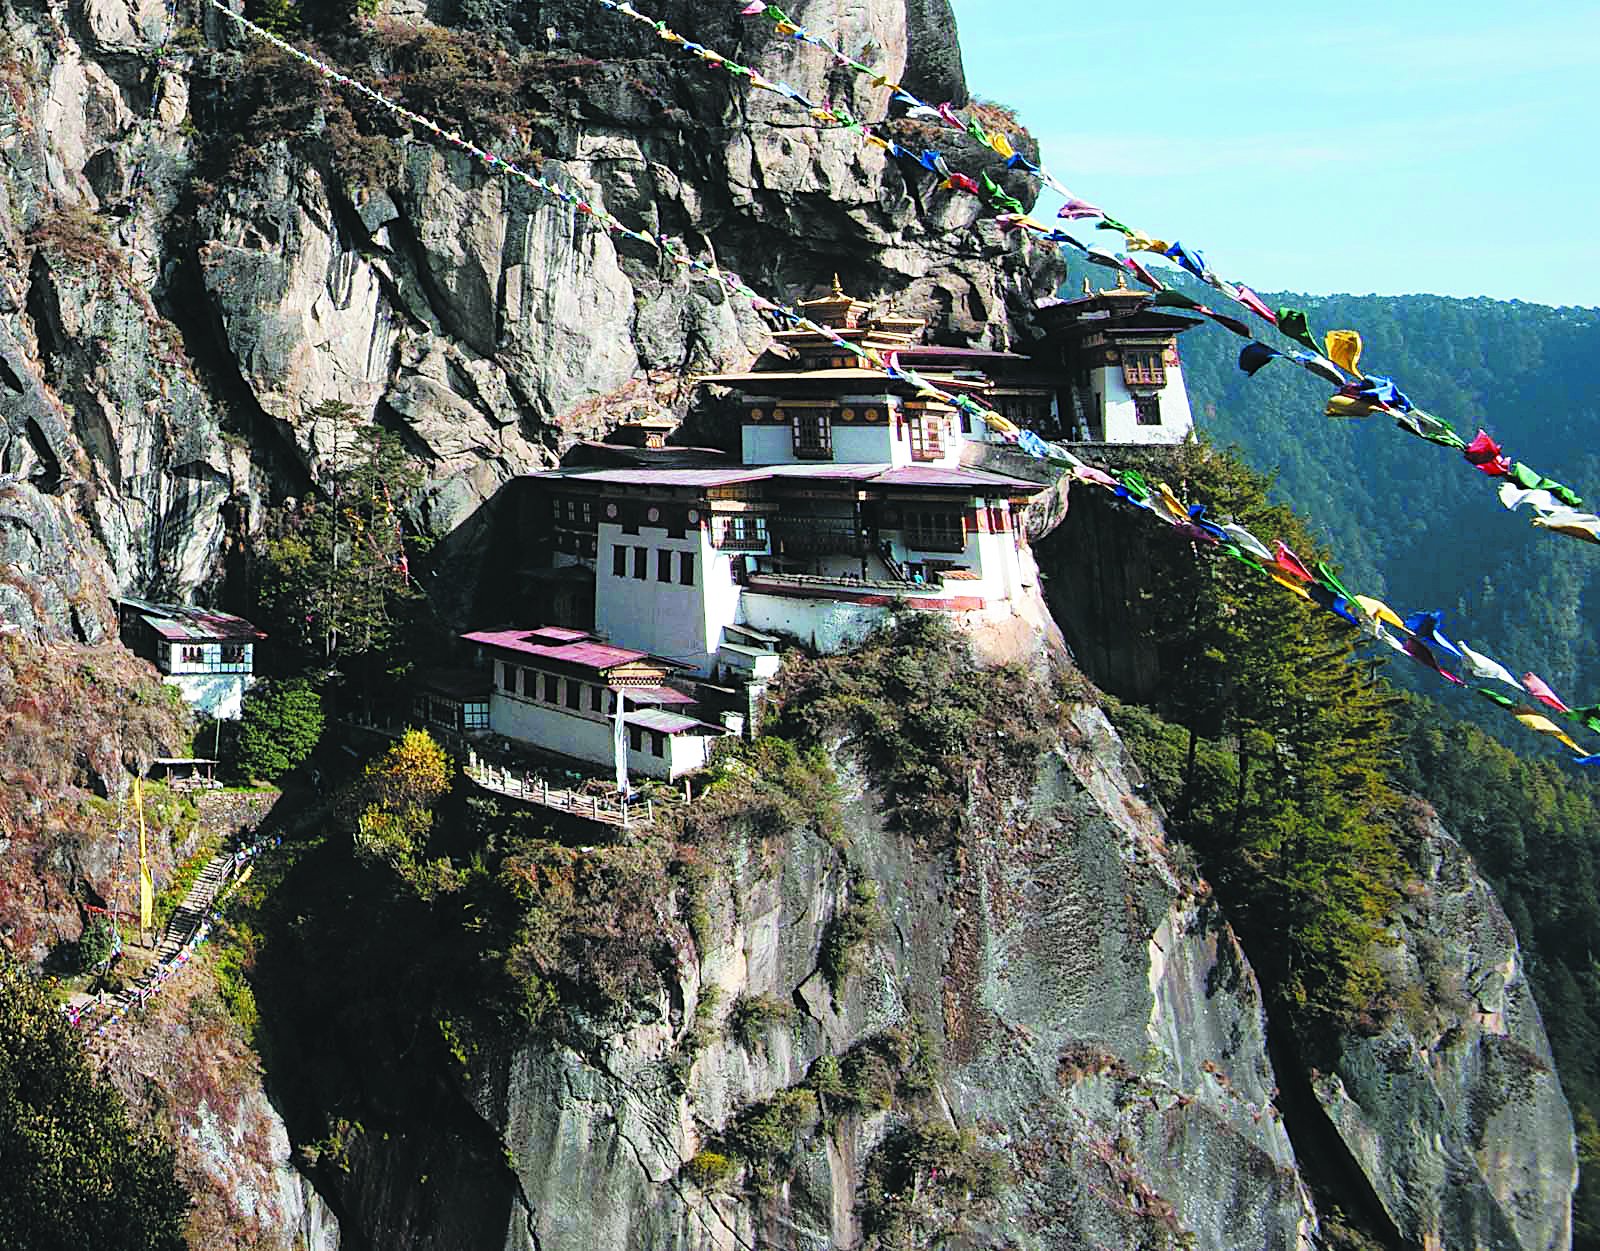 虎穴寺是不丹最著名的景点，如同悬挂在海拔3100米的峭壁上，也是不丹人的重要佛教朝圣地。